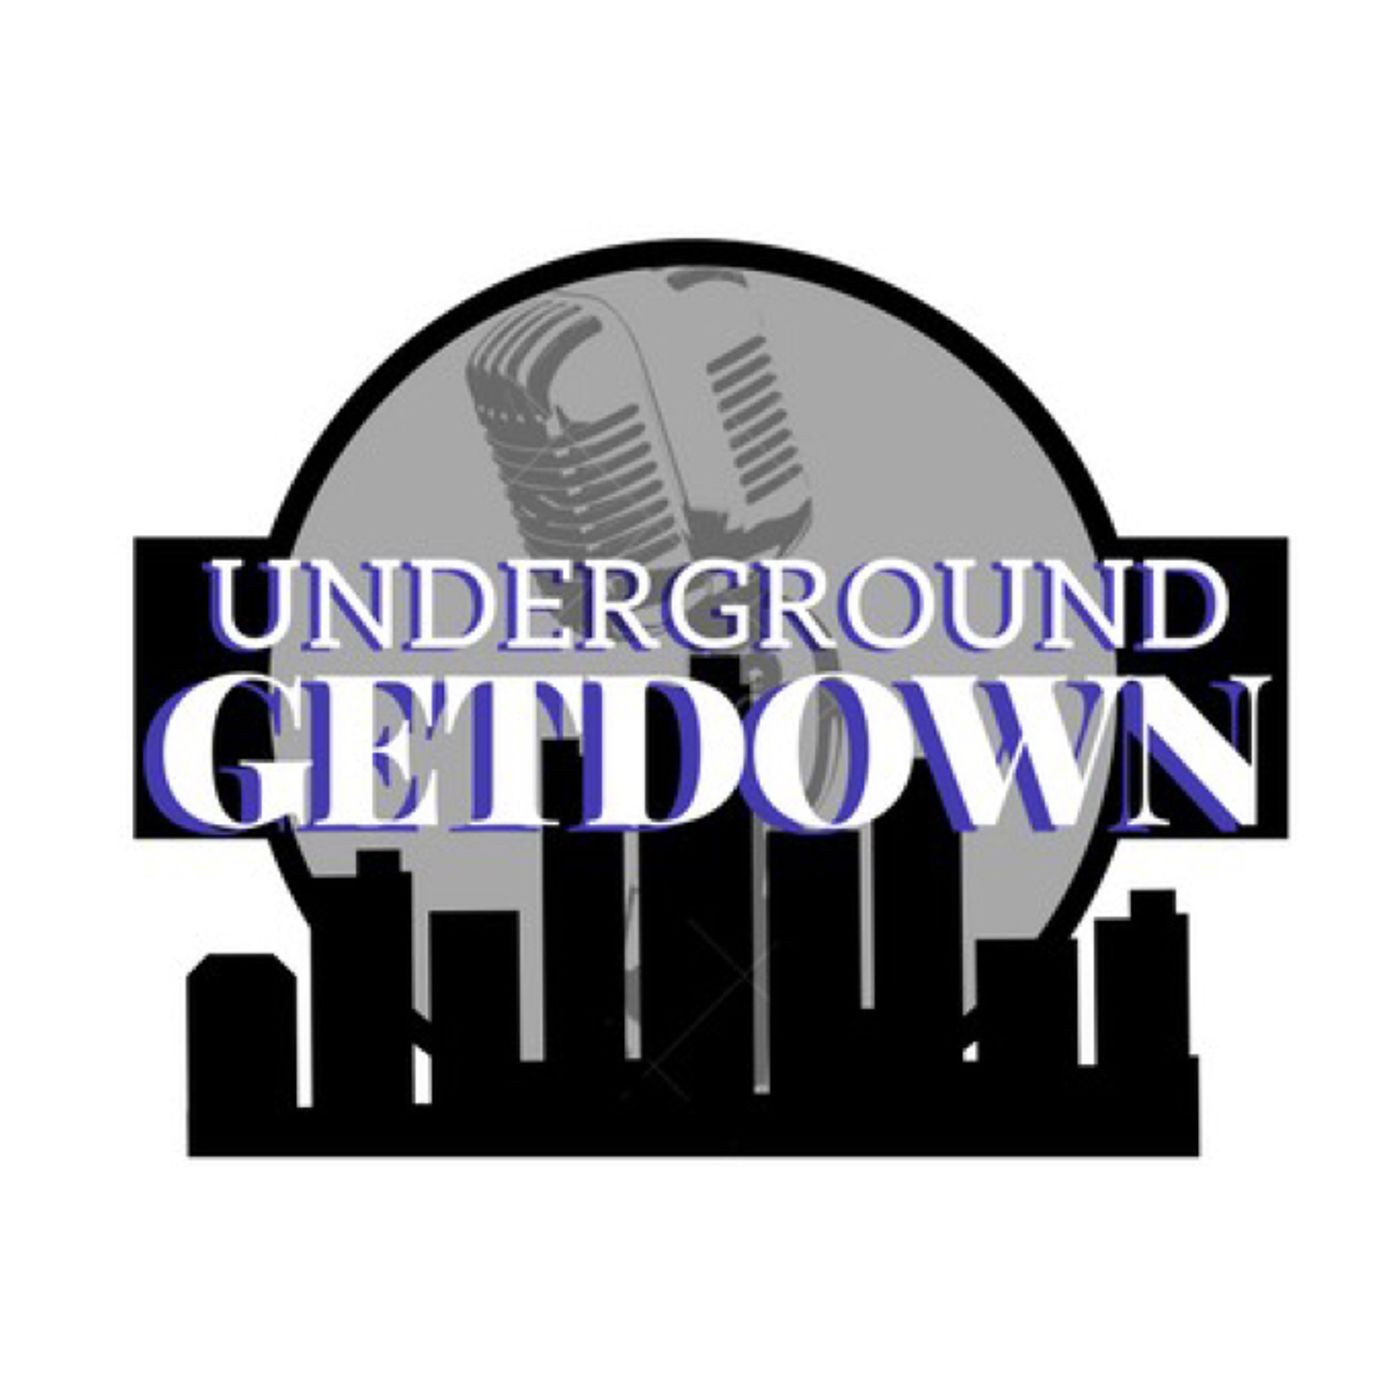 Underground Getdown - 3/27/2019 - Last Show on NAI!